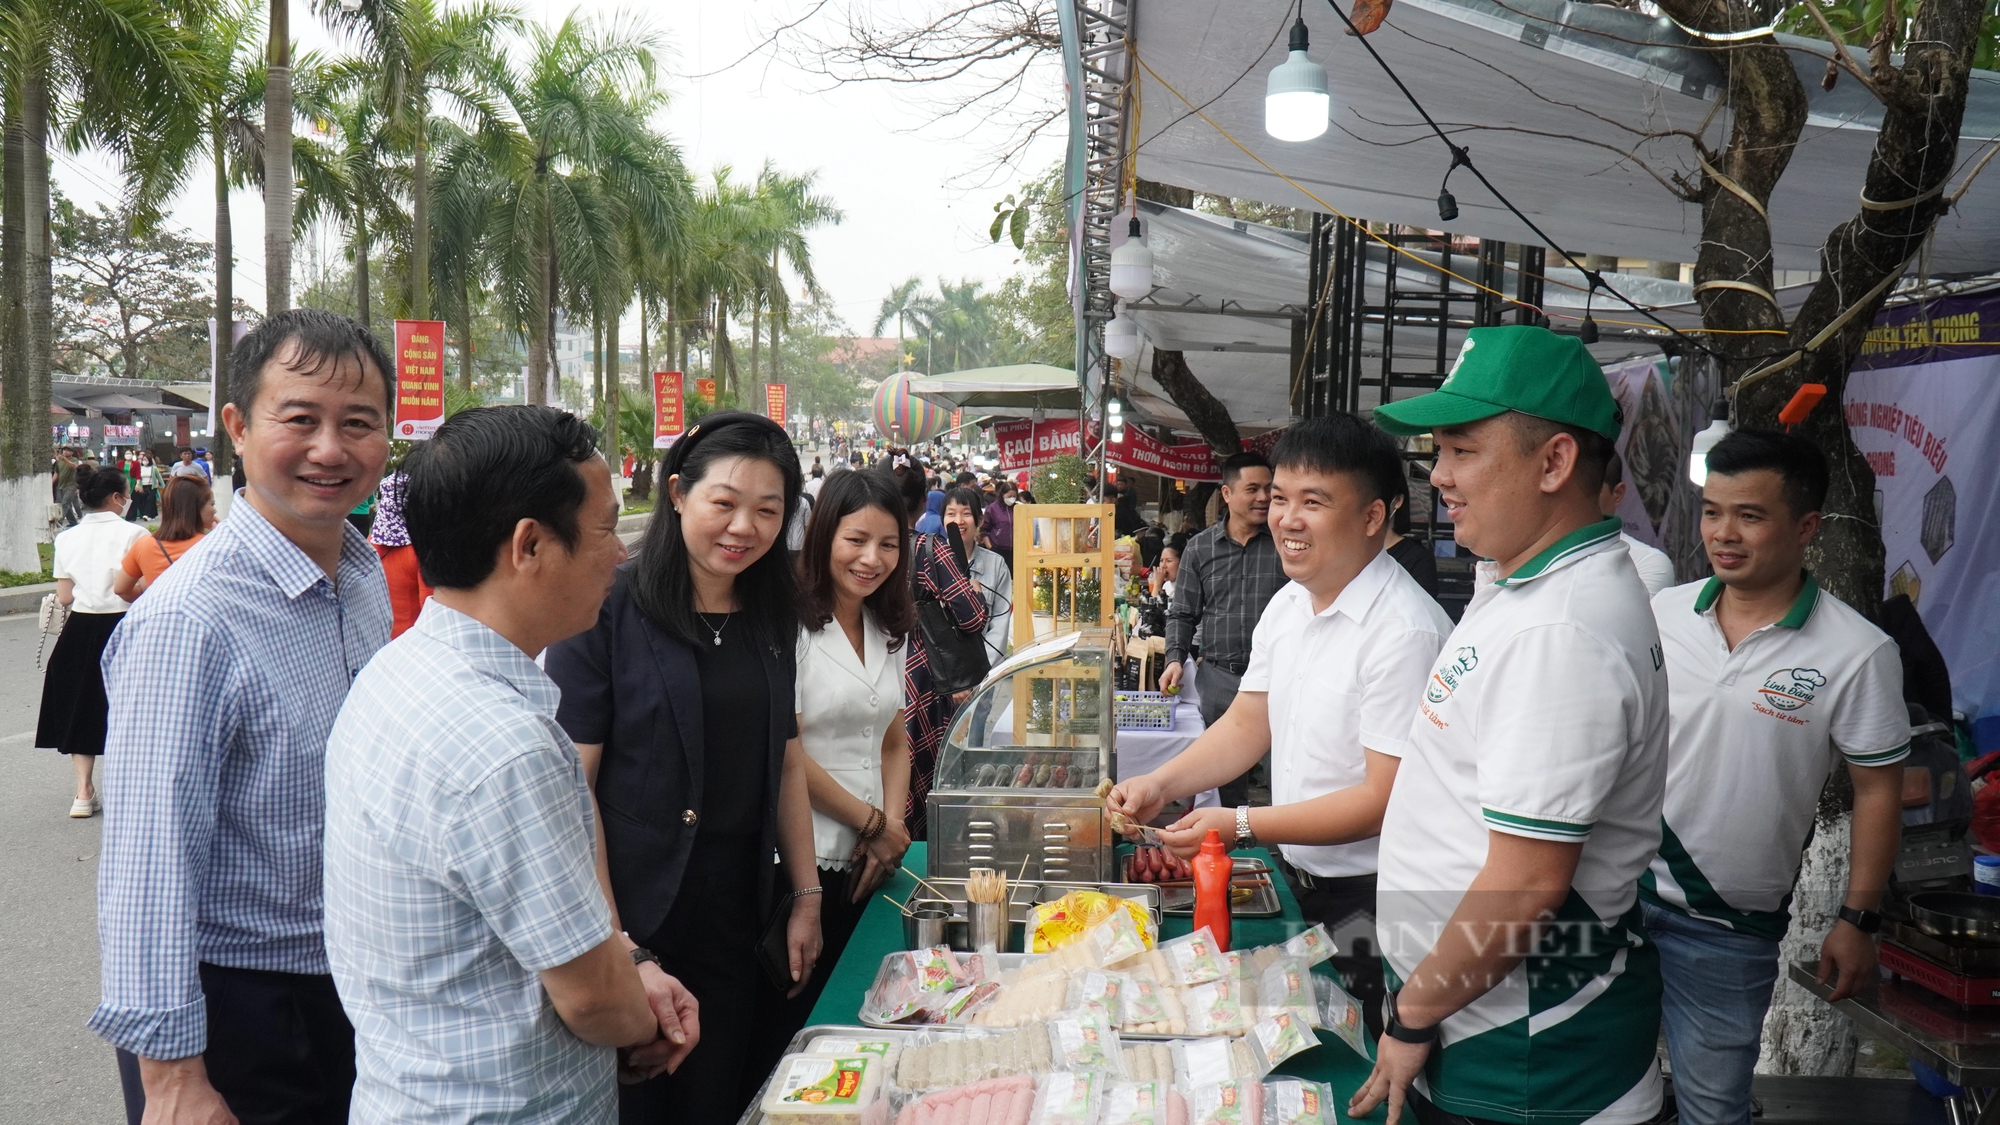 Hội Nông dân Bắc Ninh trưng bày, giới thiệu các sản phẩm OCOP, nông nghiệp tiêu biểu tại lễ hội Lim- Ảnh 2.